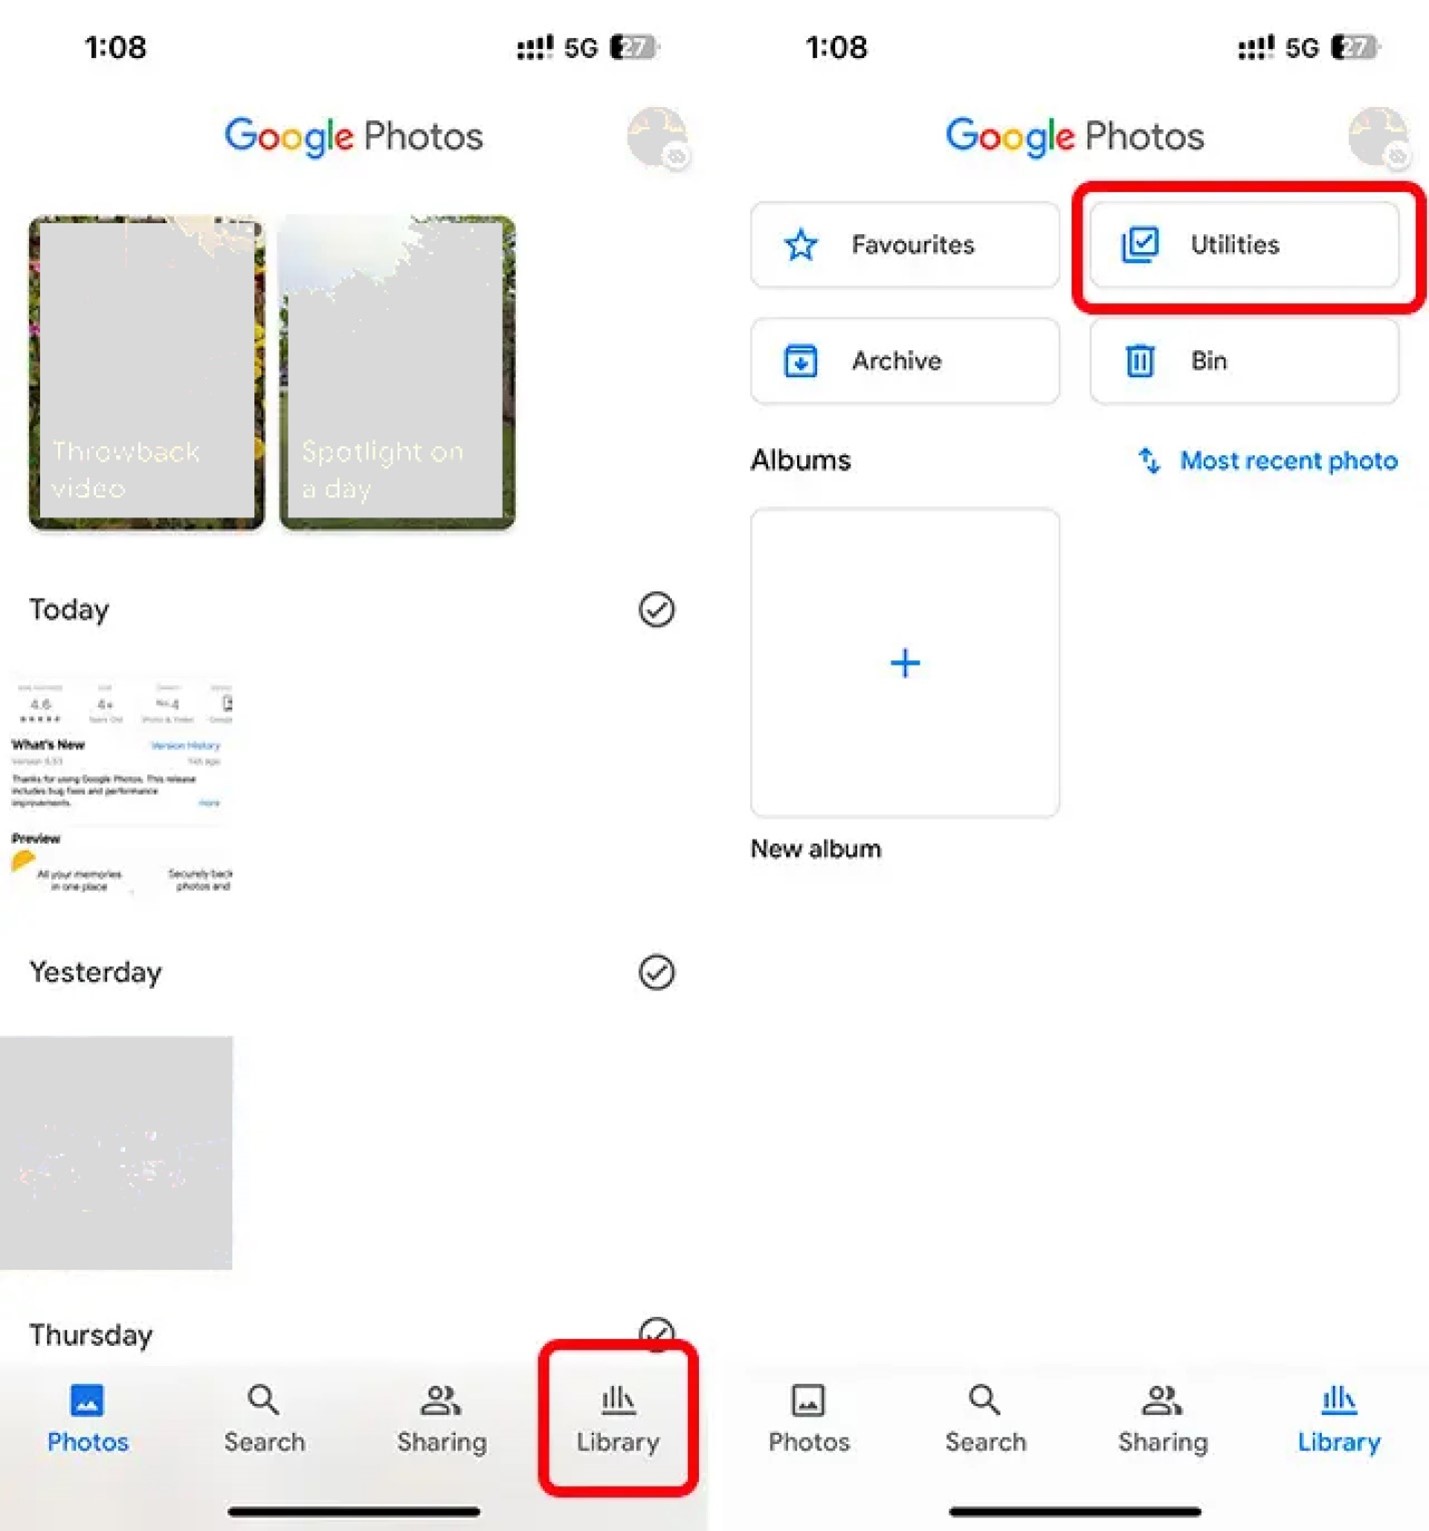 accede a la aplicación google fotos y selecciona utilidades